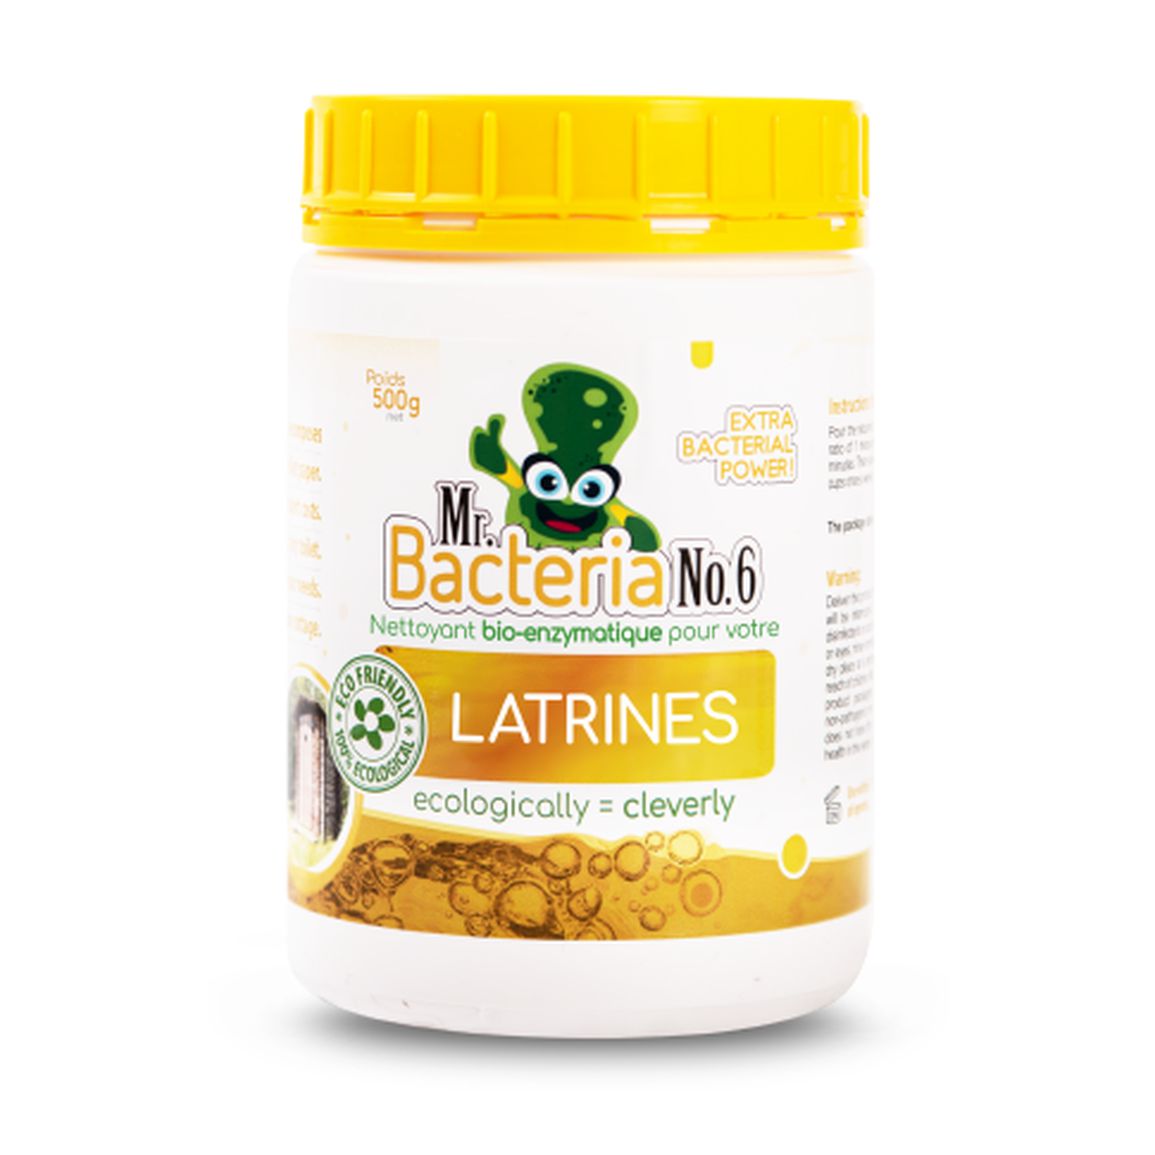 Nettoyant bio-enzymatique pour vos LATRINES 500g (Nettoyant pour toilettes sèches)